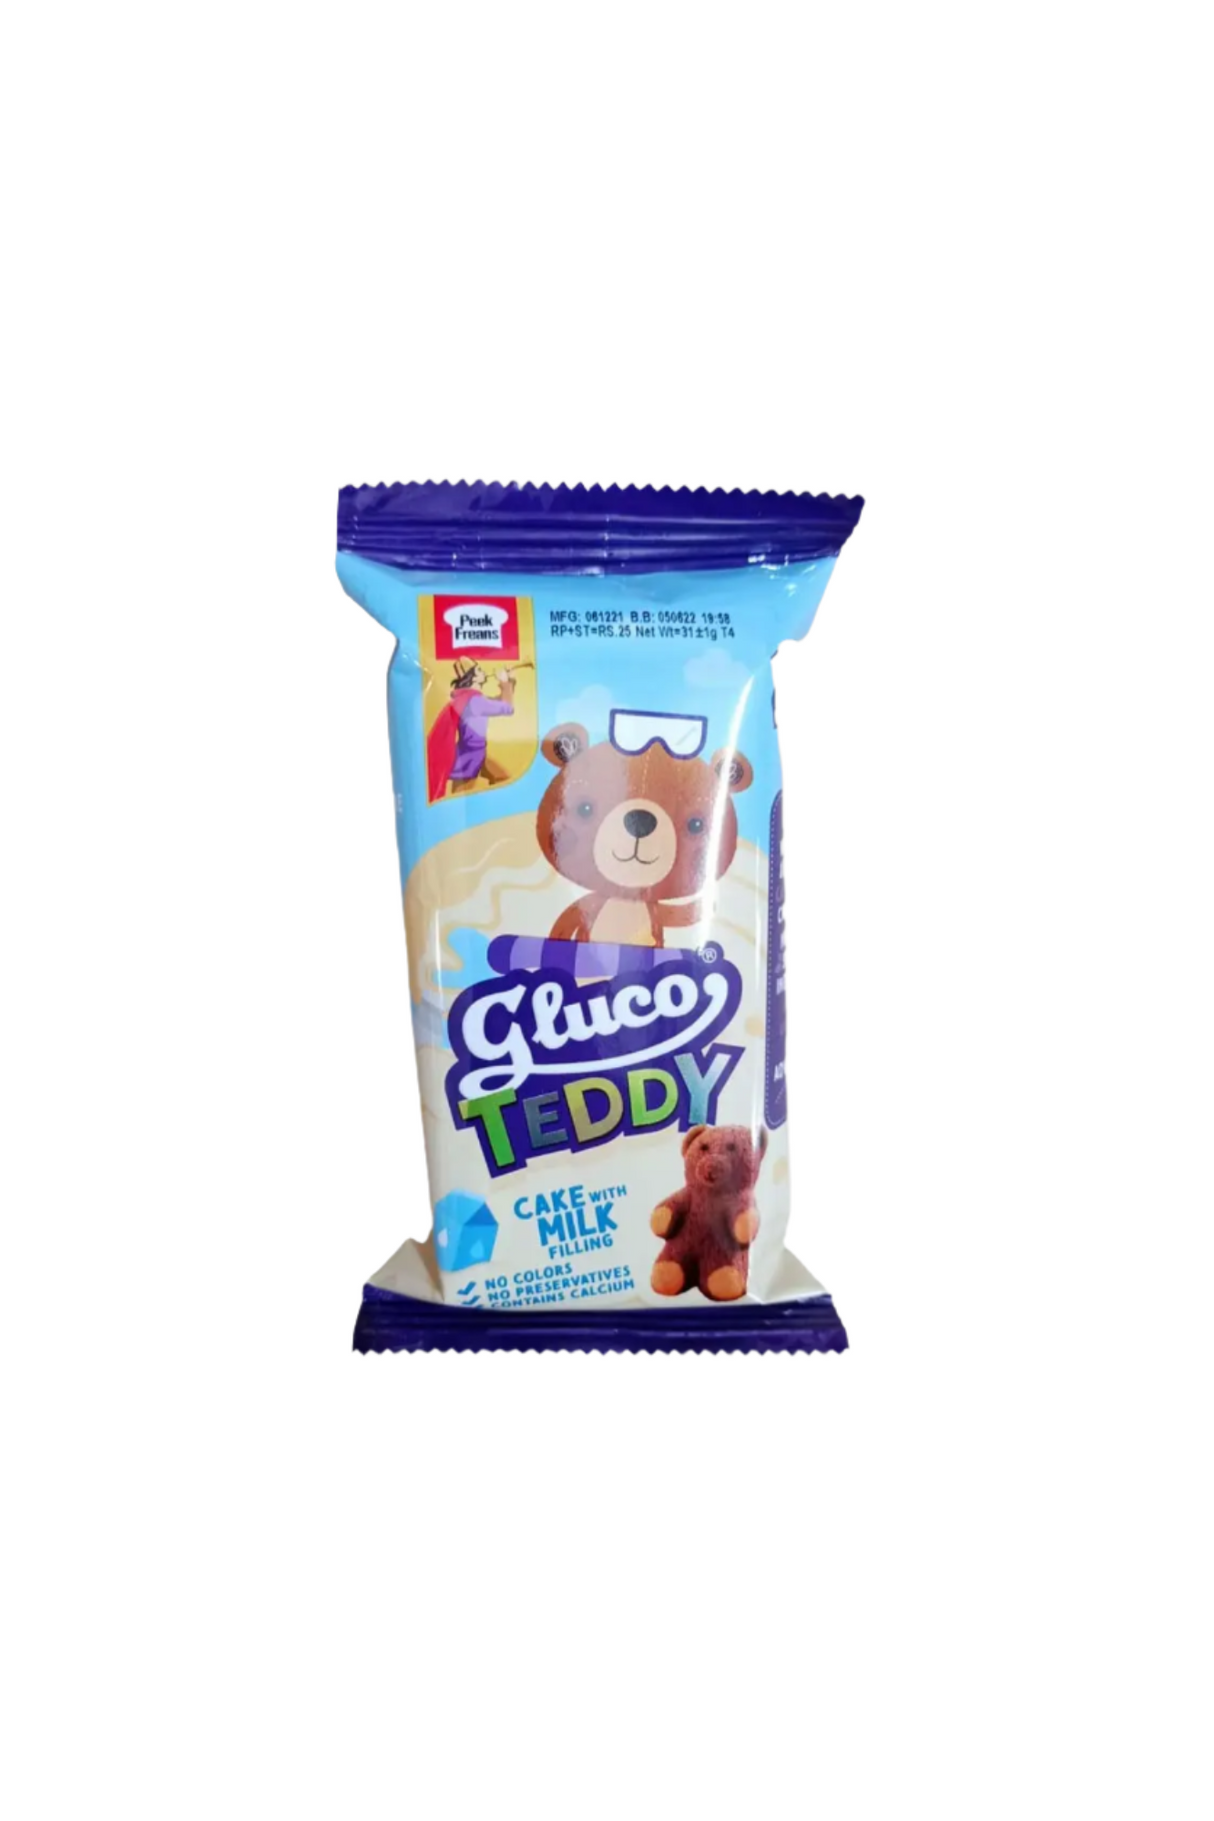 peek freans biscuit gluco teddy milk 40rs